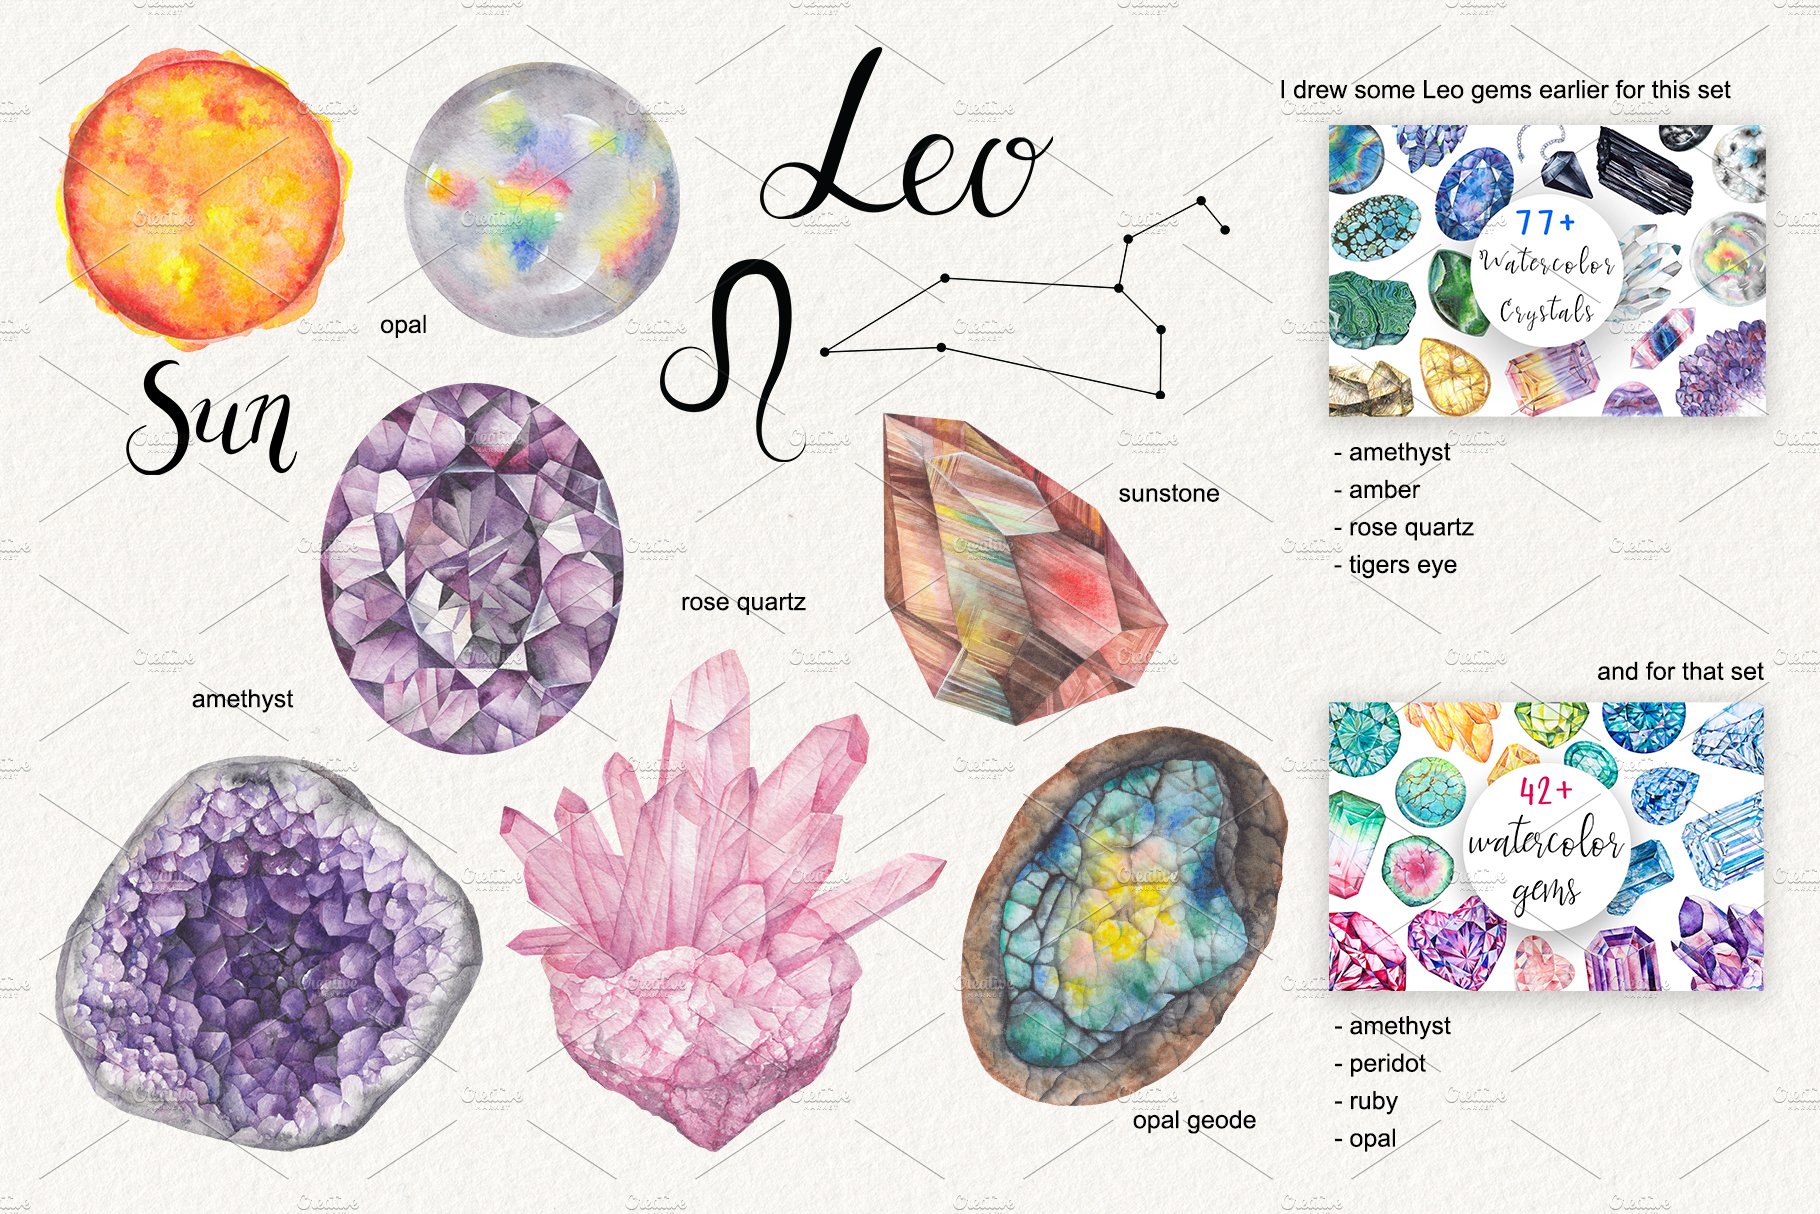 Colorful and pretty Leo stones.